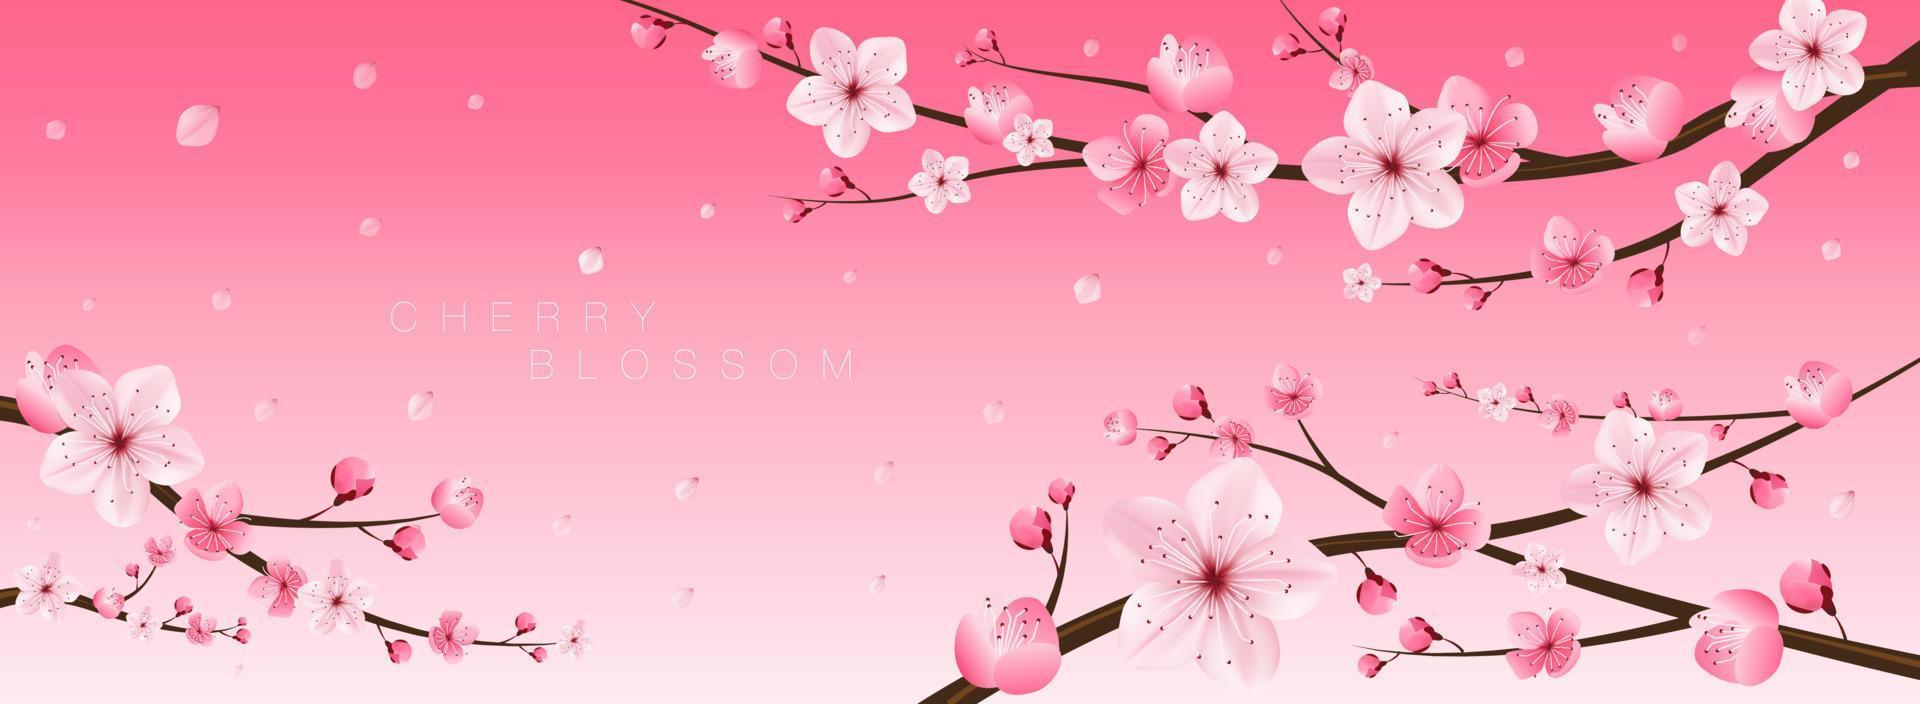 flor de cerezo, sakura, japón, patrón floral japonés, ilustración  vectorial. 6628451 Vector en Vecteezy